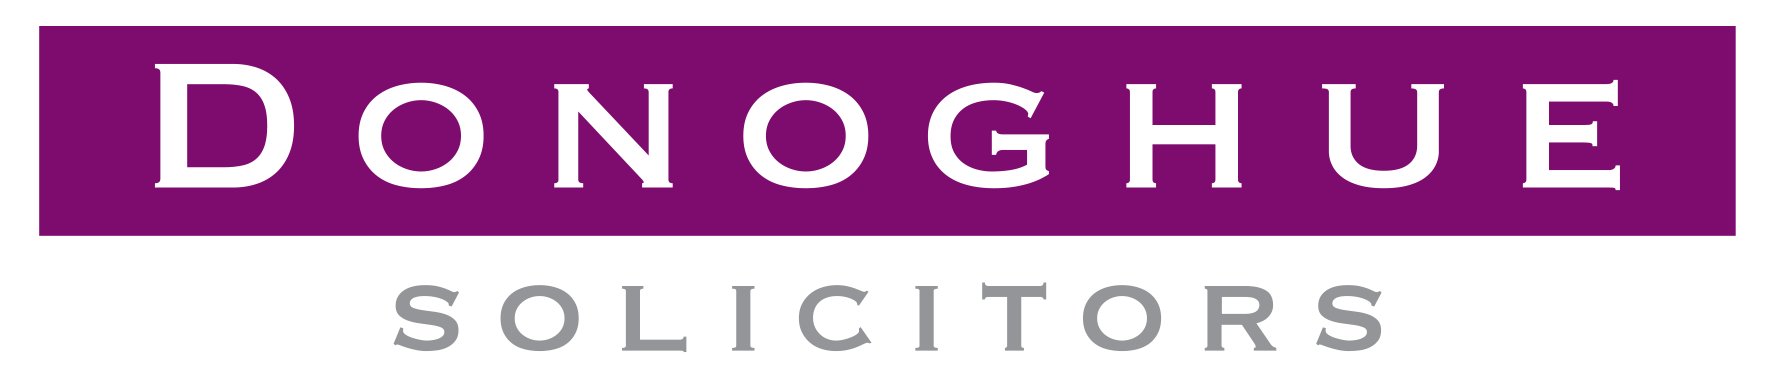 Donoghue Solicitors logo